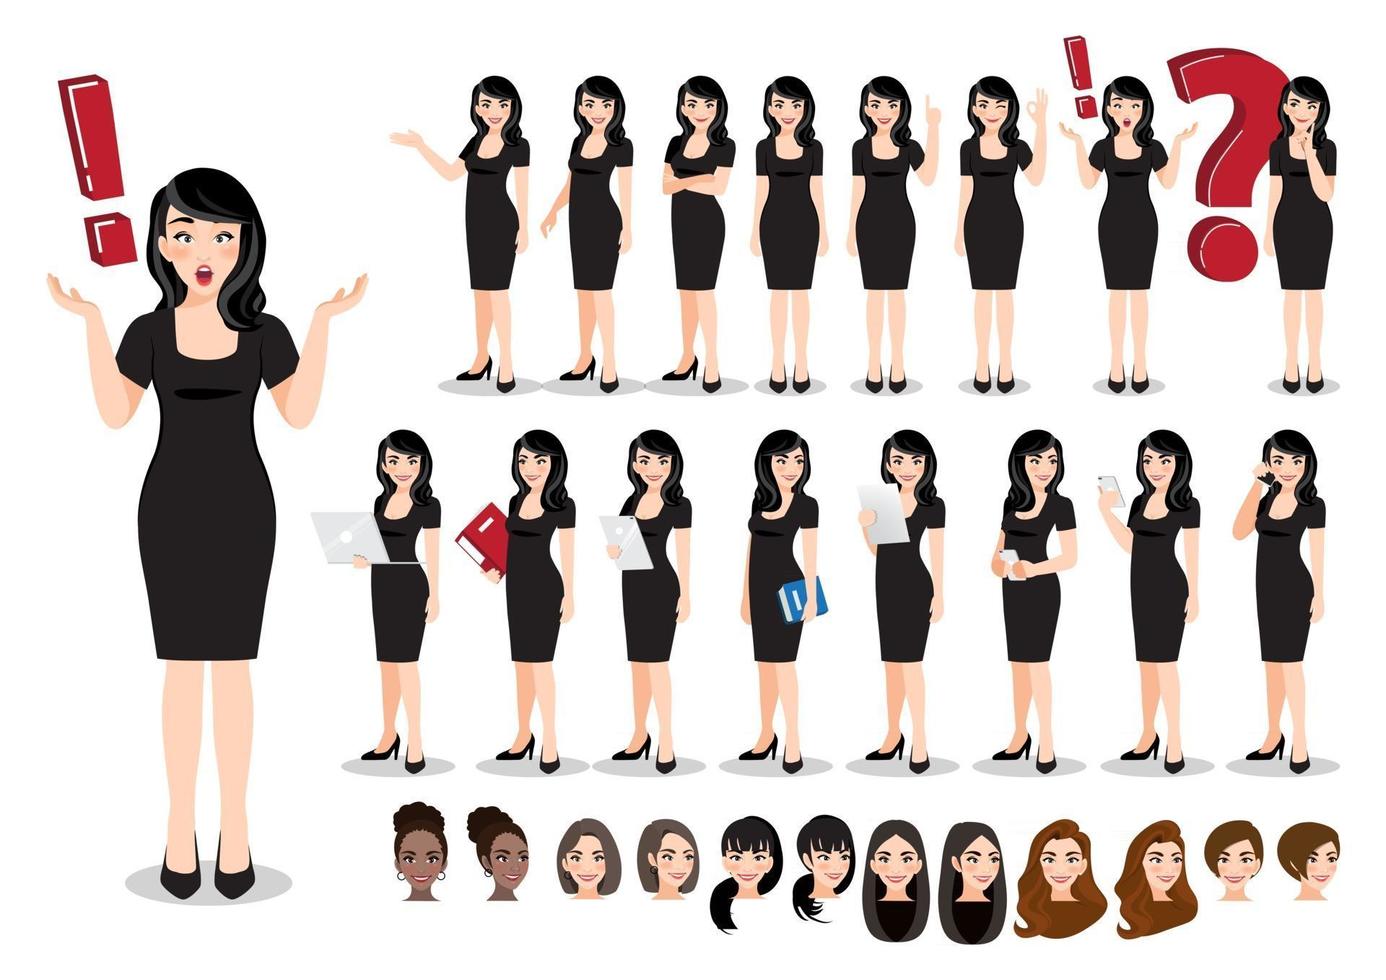 zakenvrouw cartoon tekenset. mooie zakenvrouw in een zwarte jurk. vector illustratie